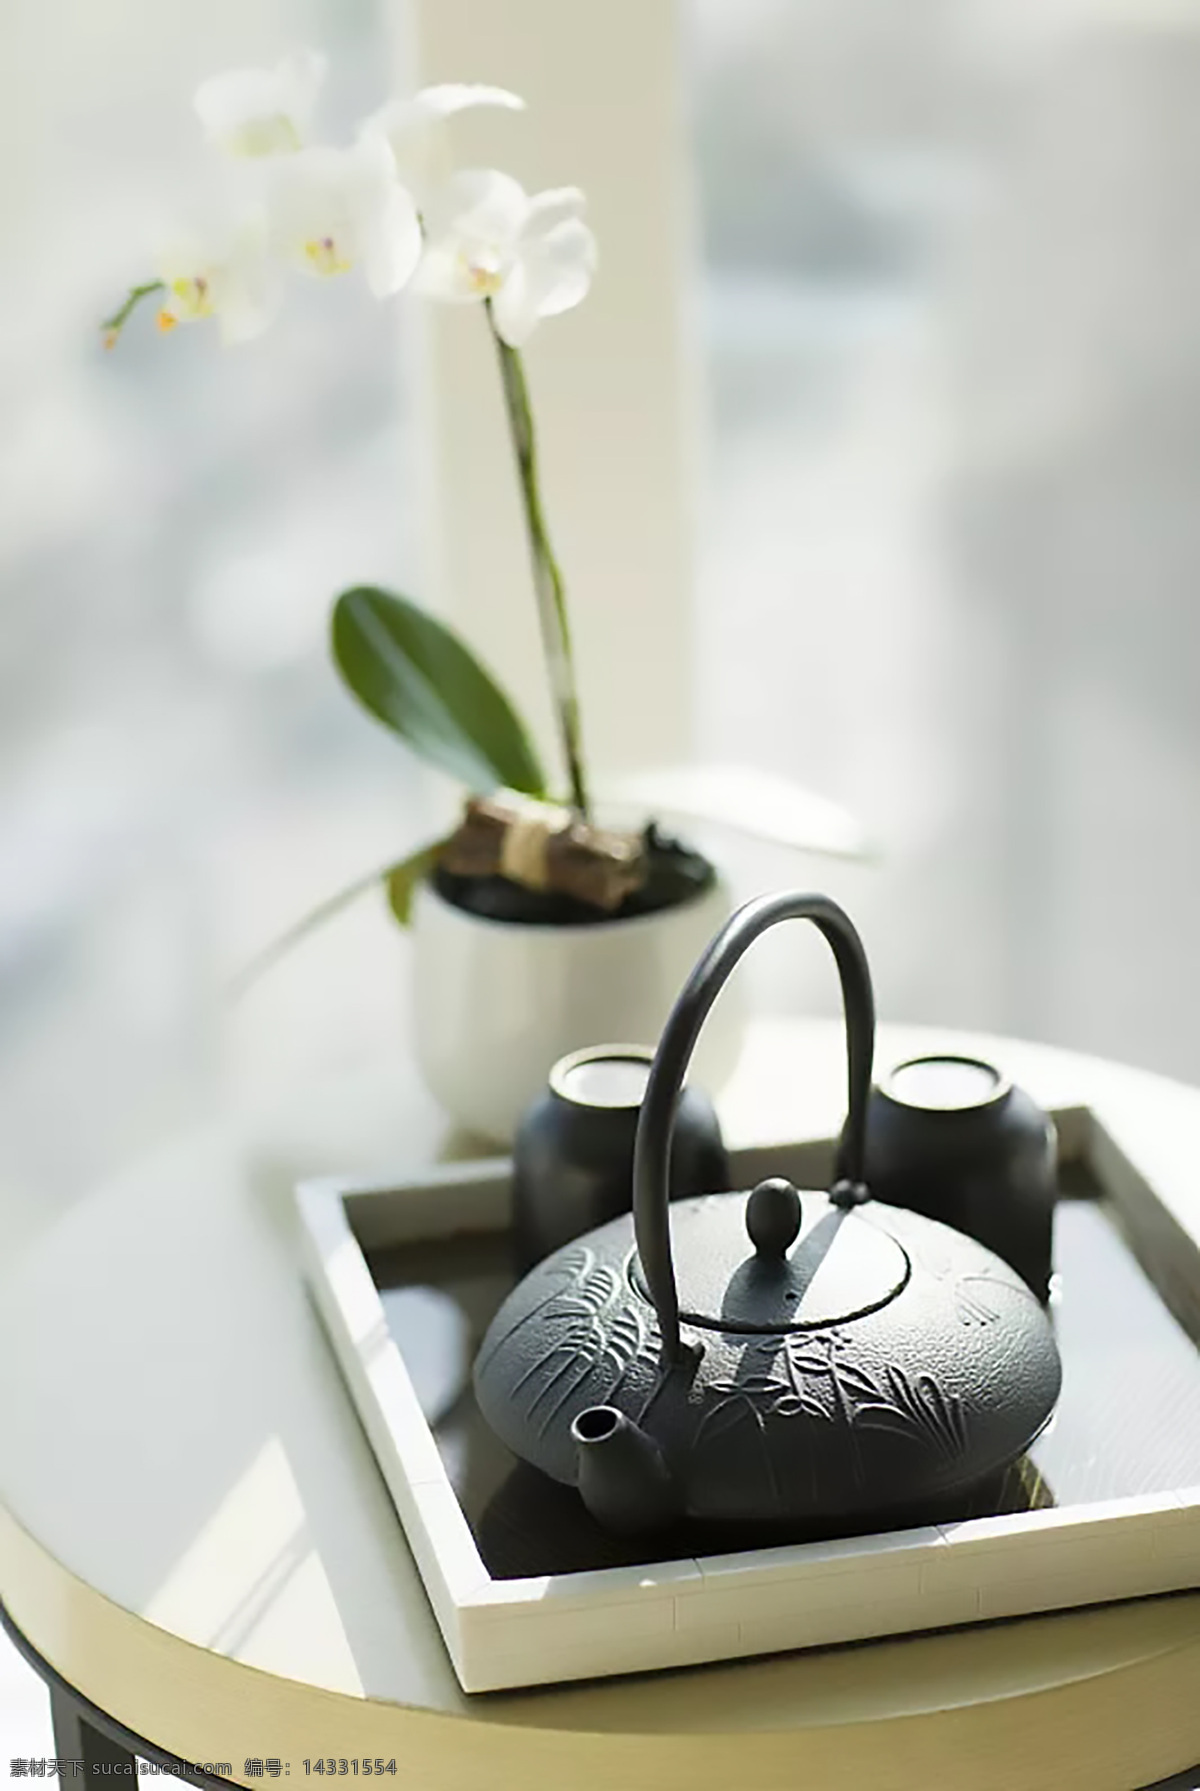 茶壶摆件 花瓶 花 摆件 茶壶 桌子 杯子 茶具